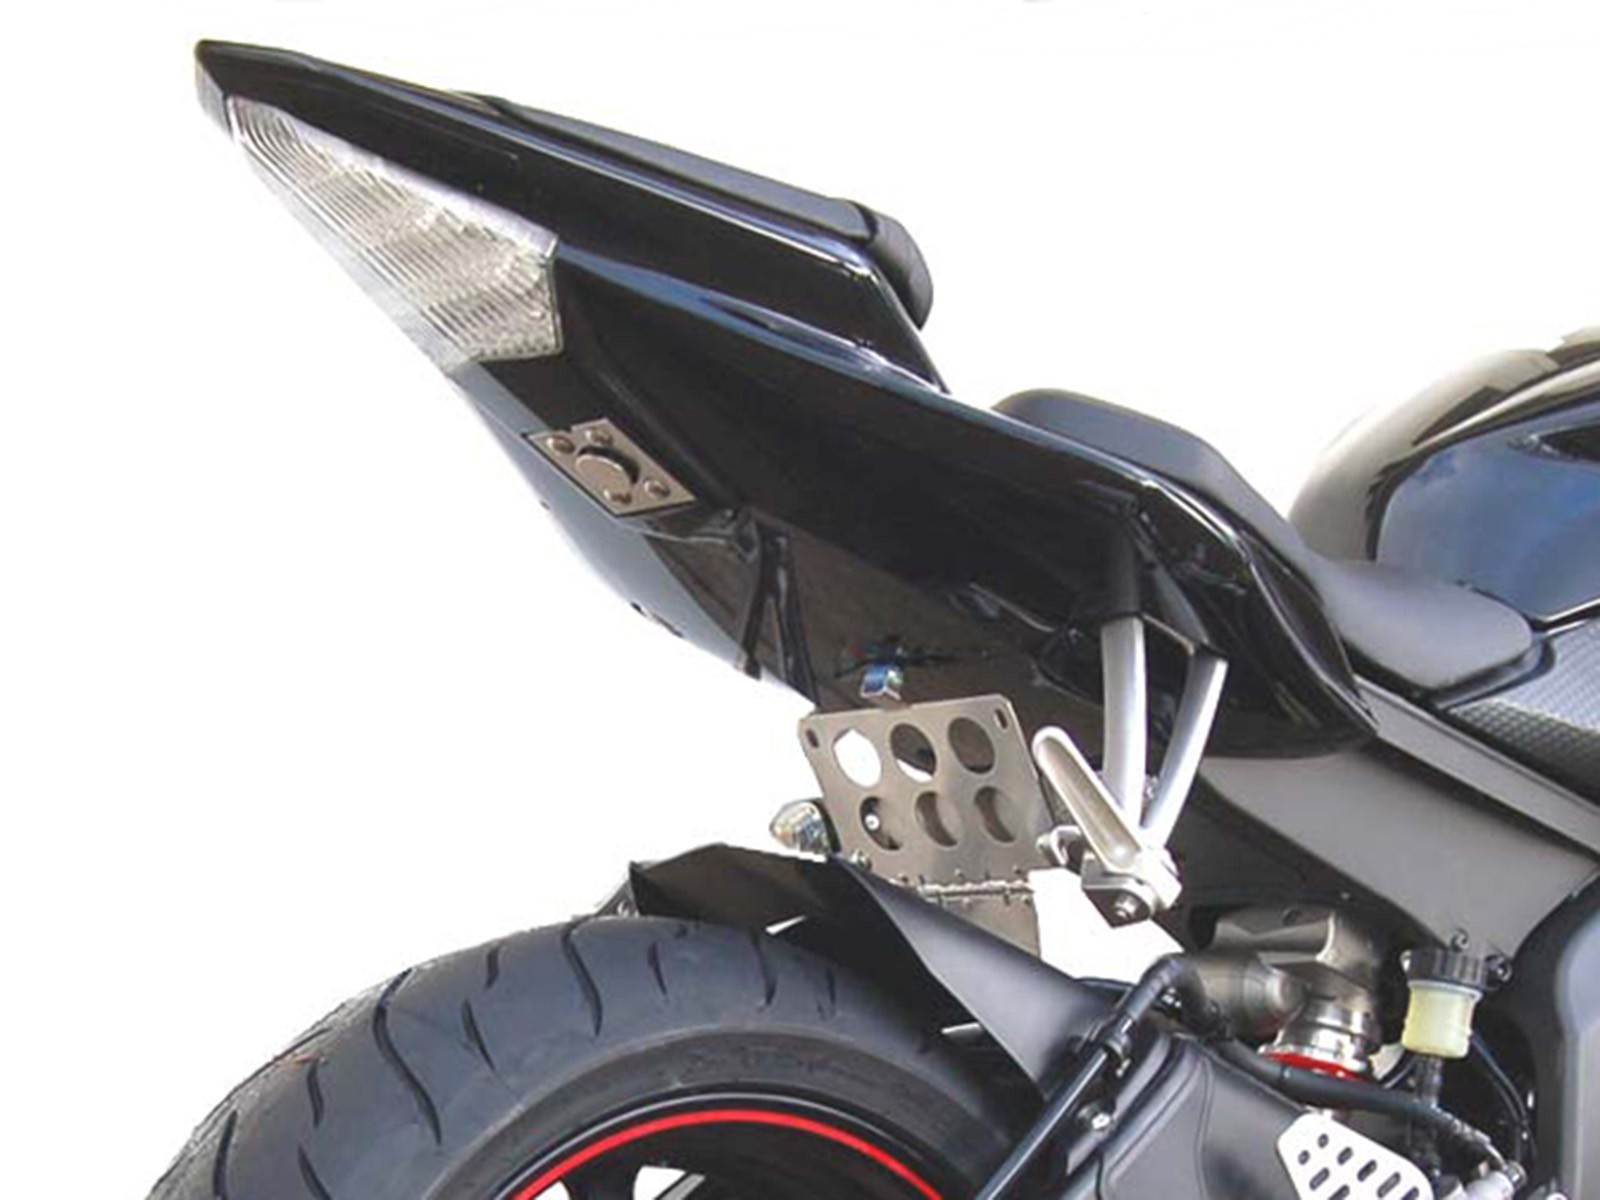 6631円 激安特価 ナンバープレートフレーム オートバイのナンバープレートホルダーテールタイディymahと互換性があります YZF R6 YZF-R6 2006-2016LEDライトフェンダーエリミネーター オートバイナンバープレートホルダー